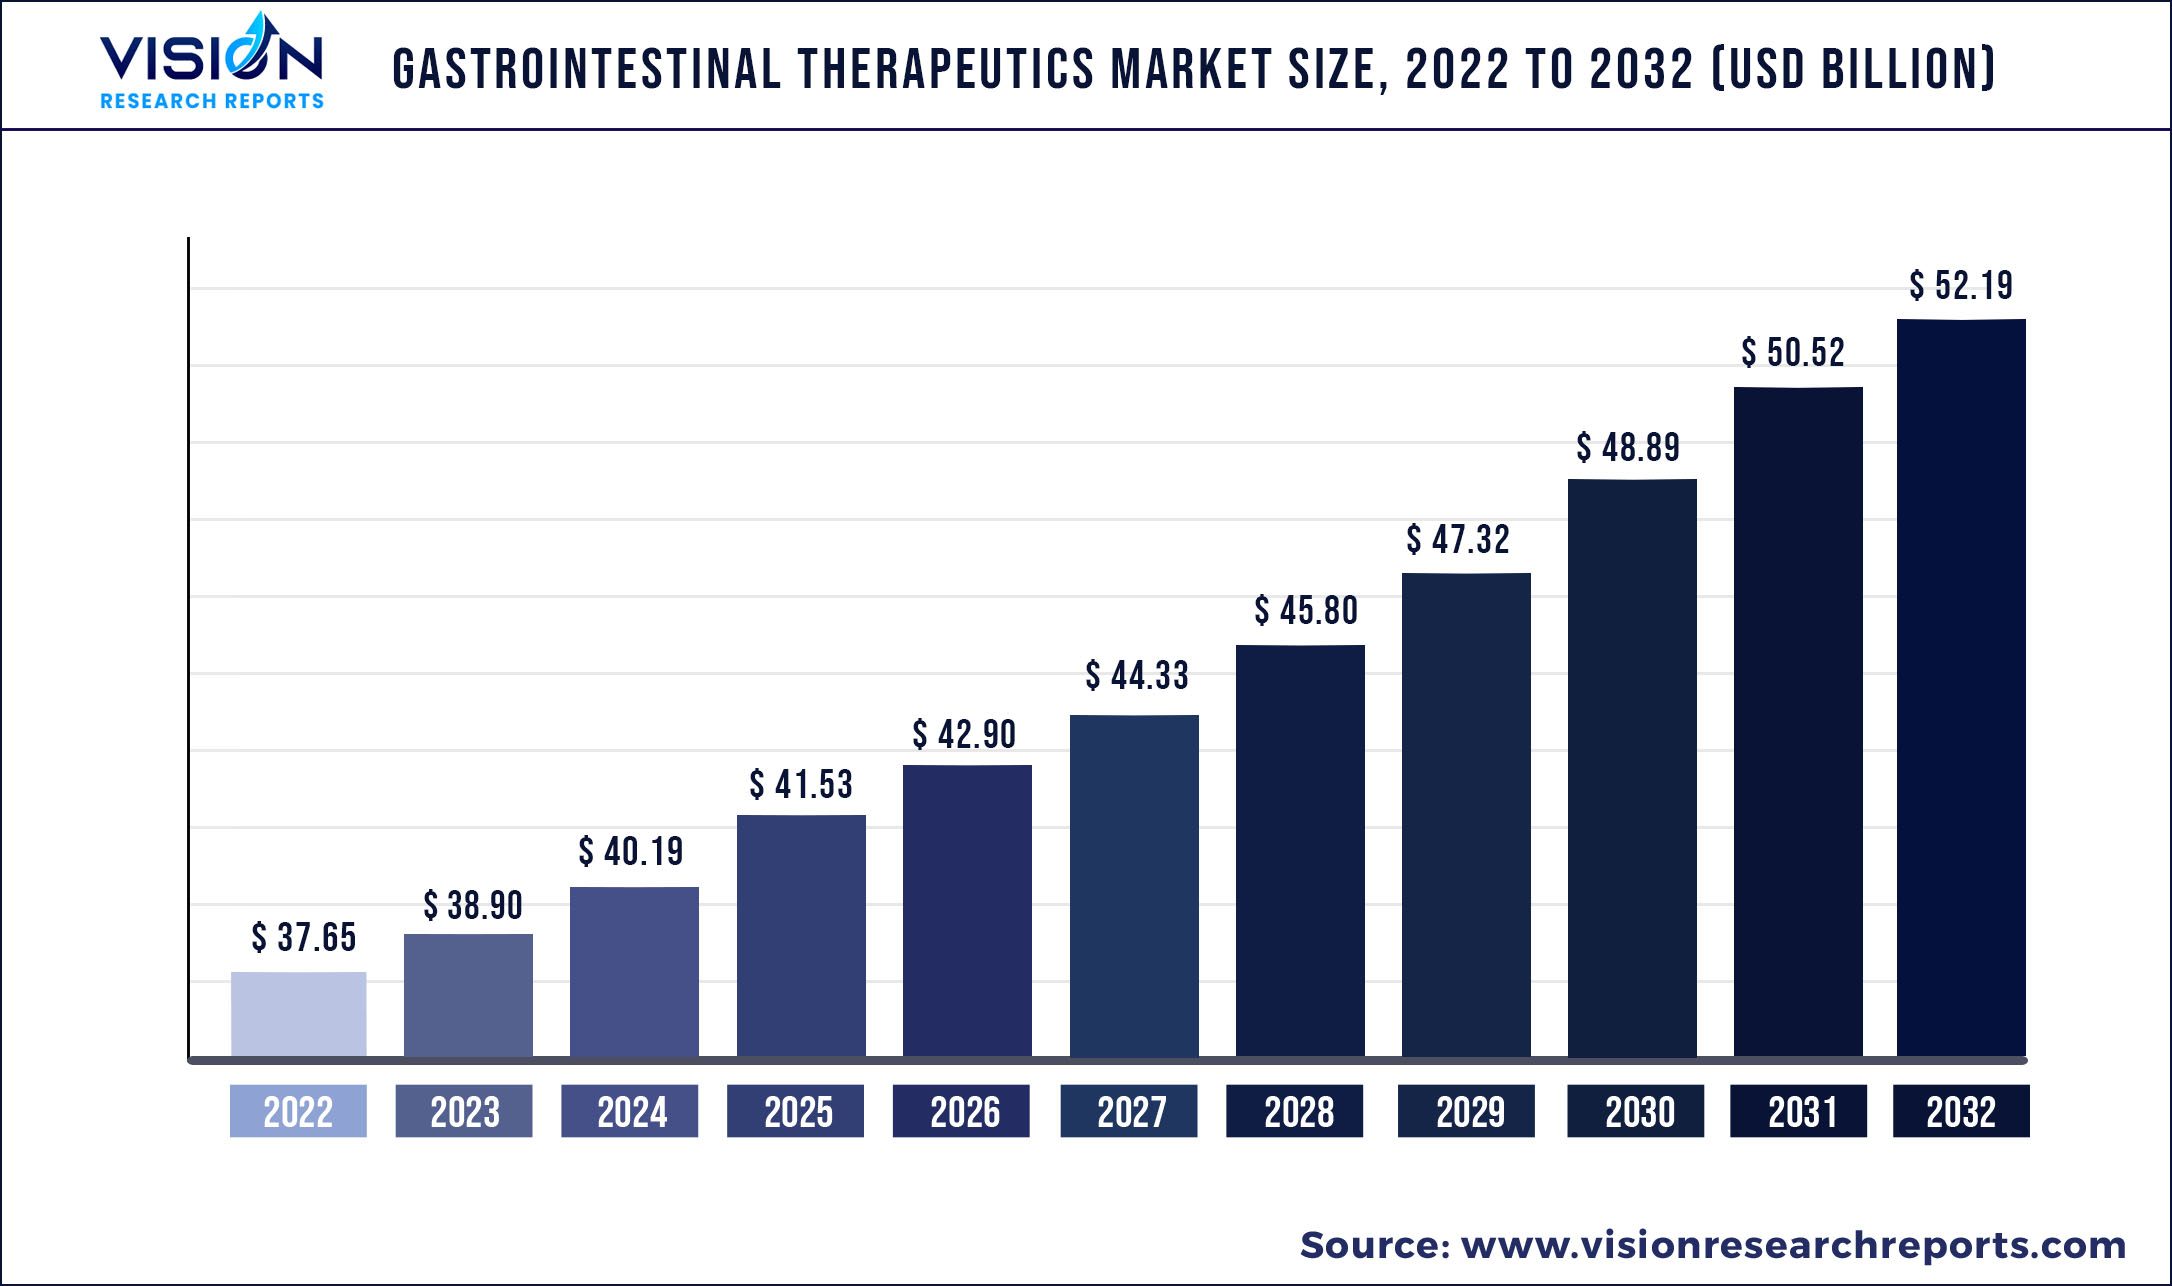 Gastrointestinal Therapeutics Market Size 2022 to 2032